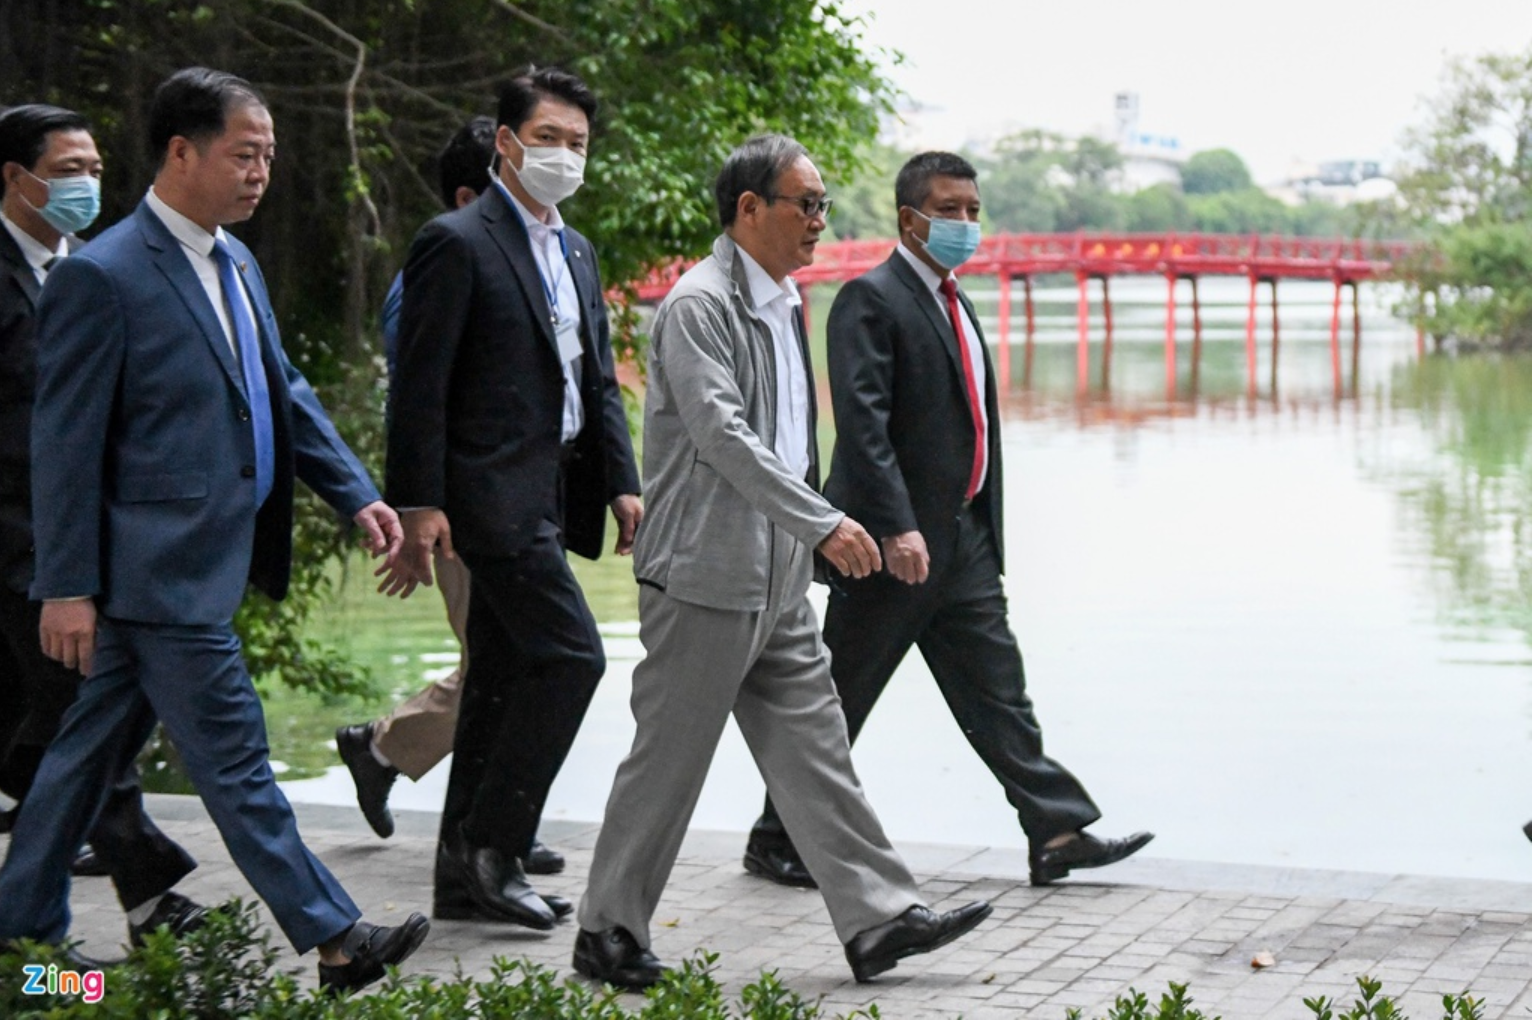 Thủ tướng Nhật Bản cùng các thành viên trong đoàn có mặt tại khu vực hồ Hoàn Kiếm.